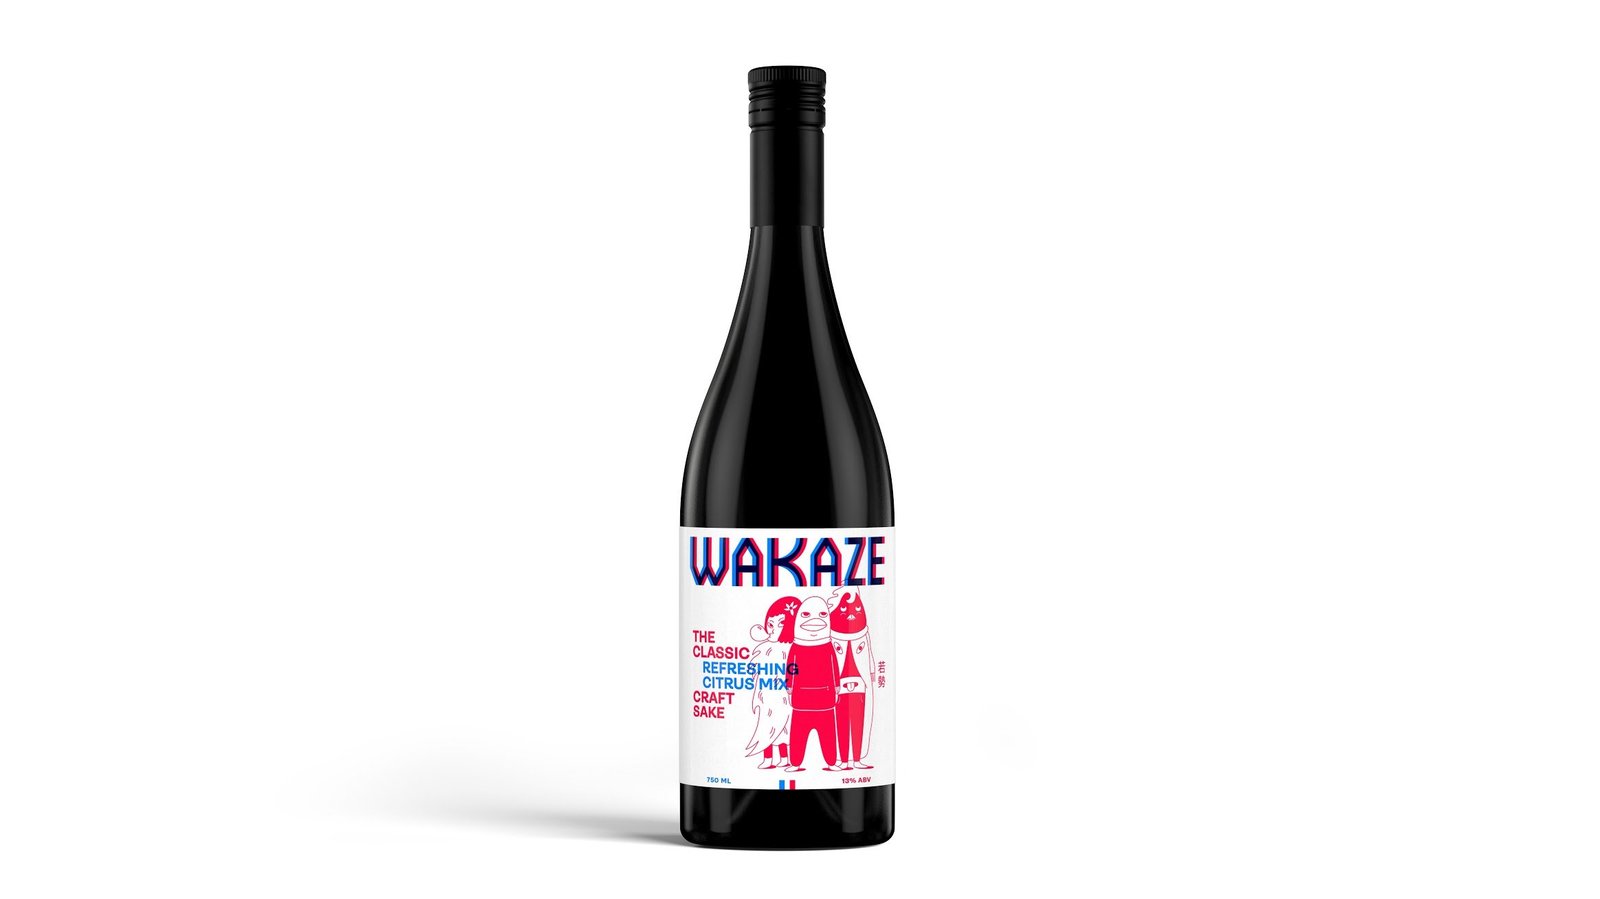 ビール、ワインに次ぐ“第3の選択肢に”──パリで日本酒を造る「WAKAZE」が資金調達 | DIAMOND SIGNAL